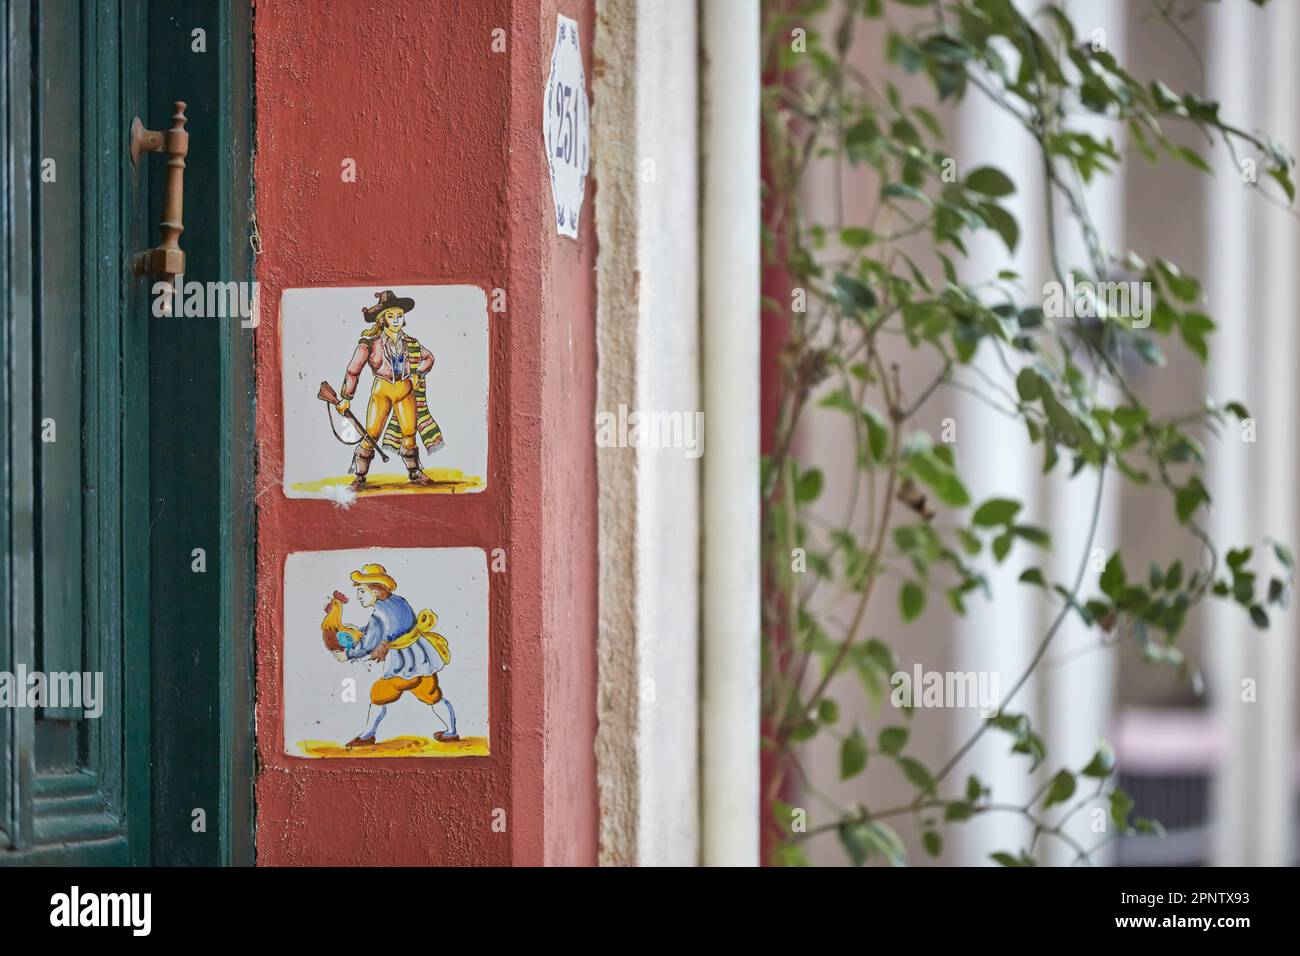 Détail de tuiles portugaises à l'entrée d'une maison à Colonia del Sacramento, Uruguay. Banque D'Images